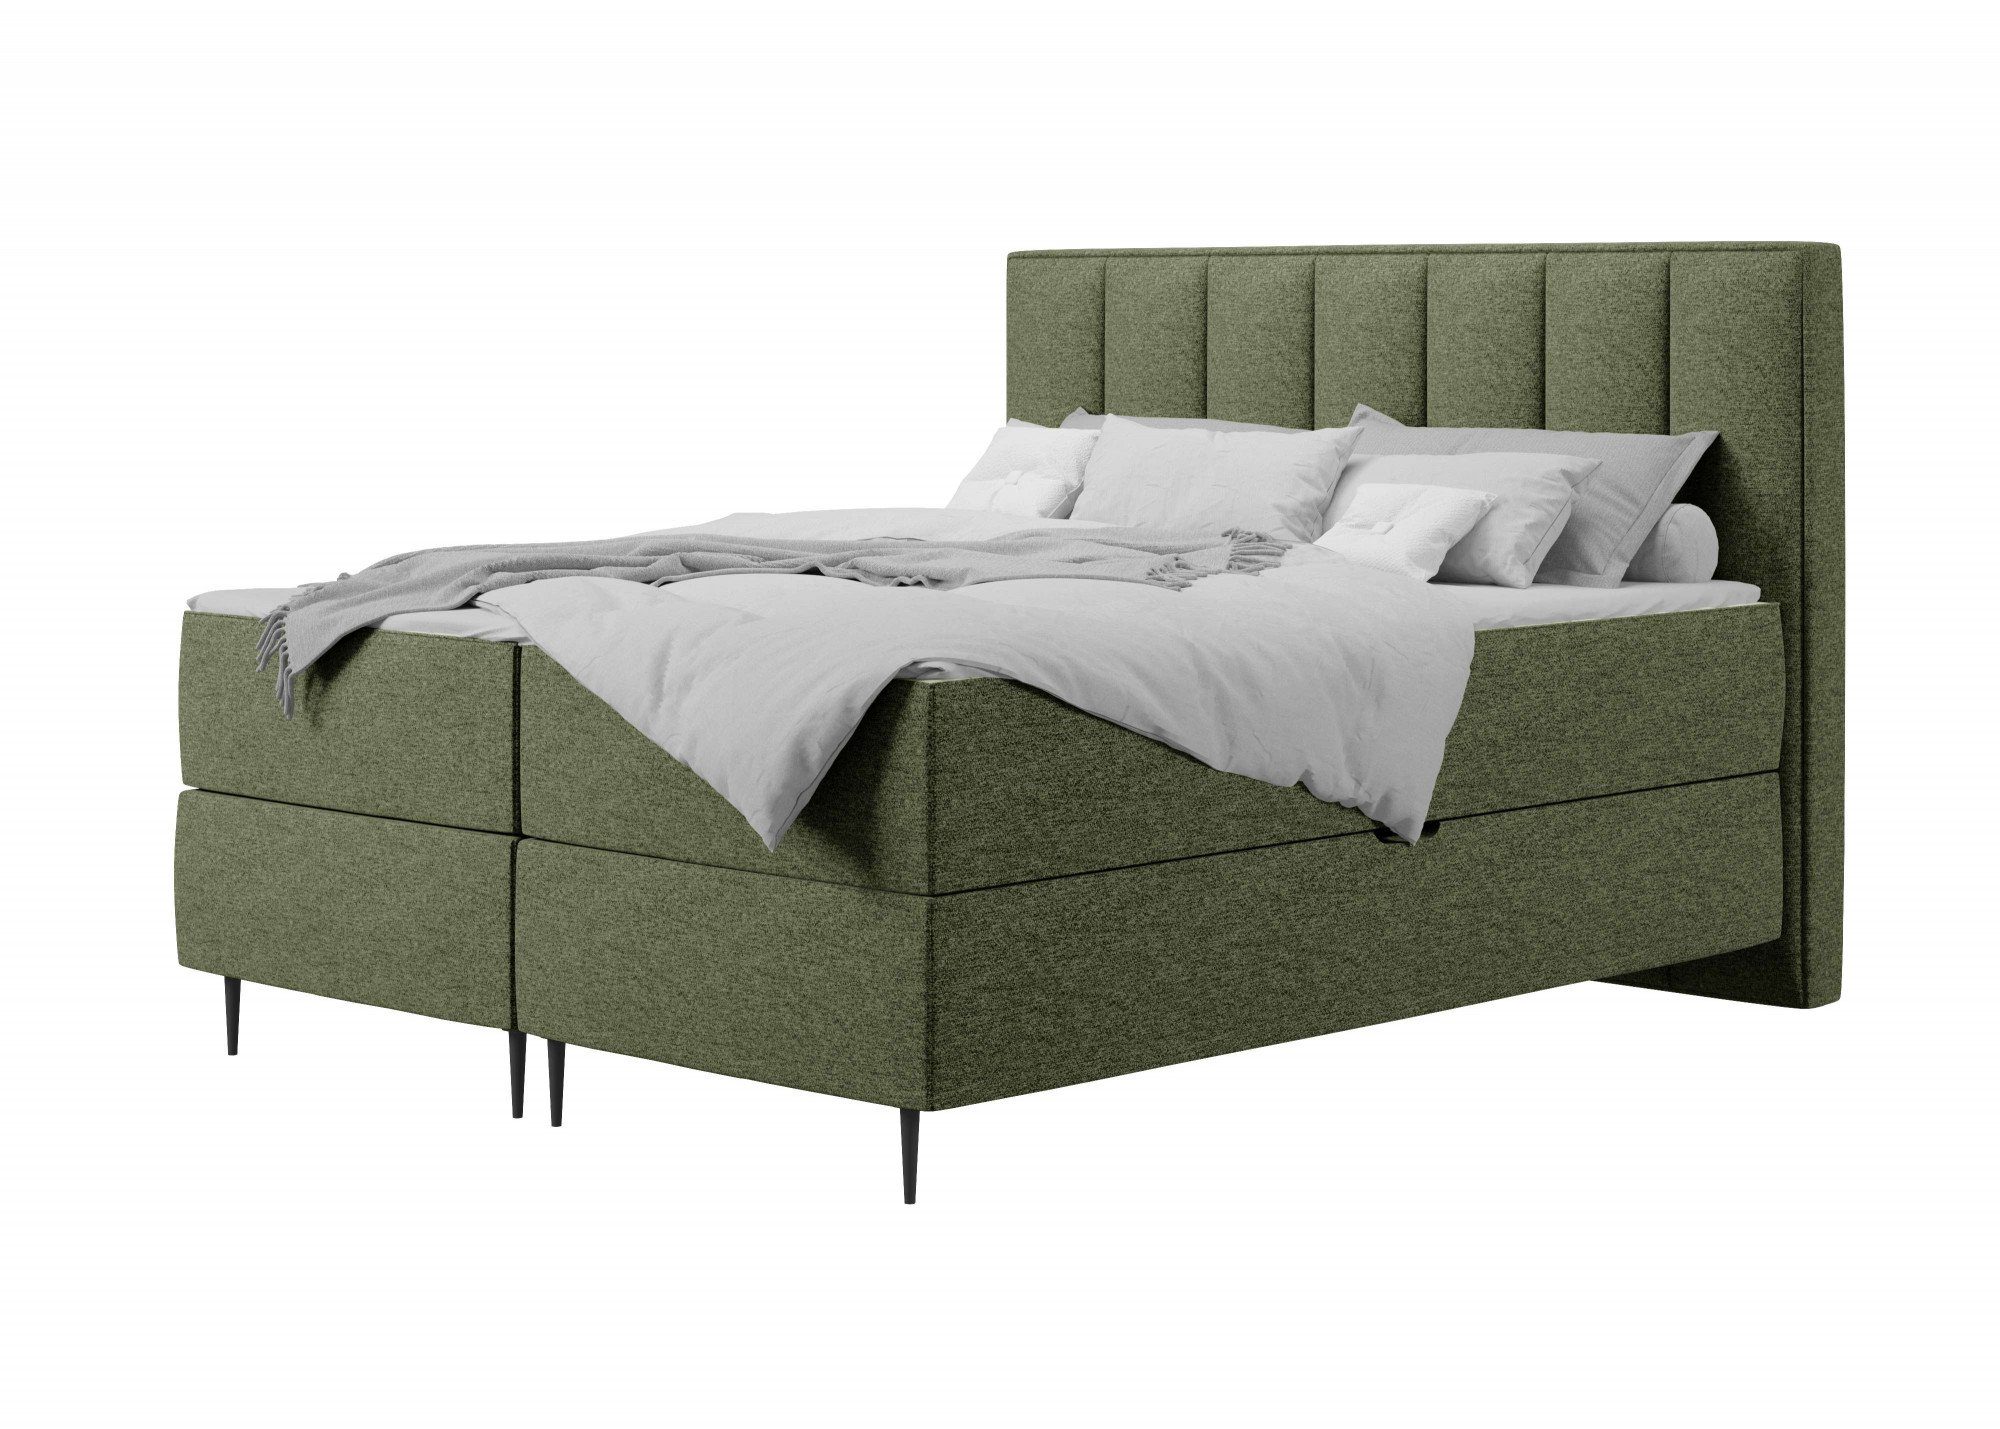 Places of Style Boxbett Rita, mit Taschen-Federkernmatratze und Bettkasten grün